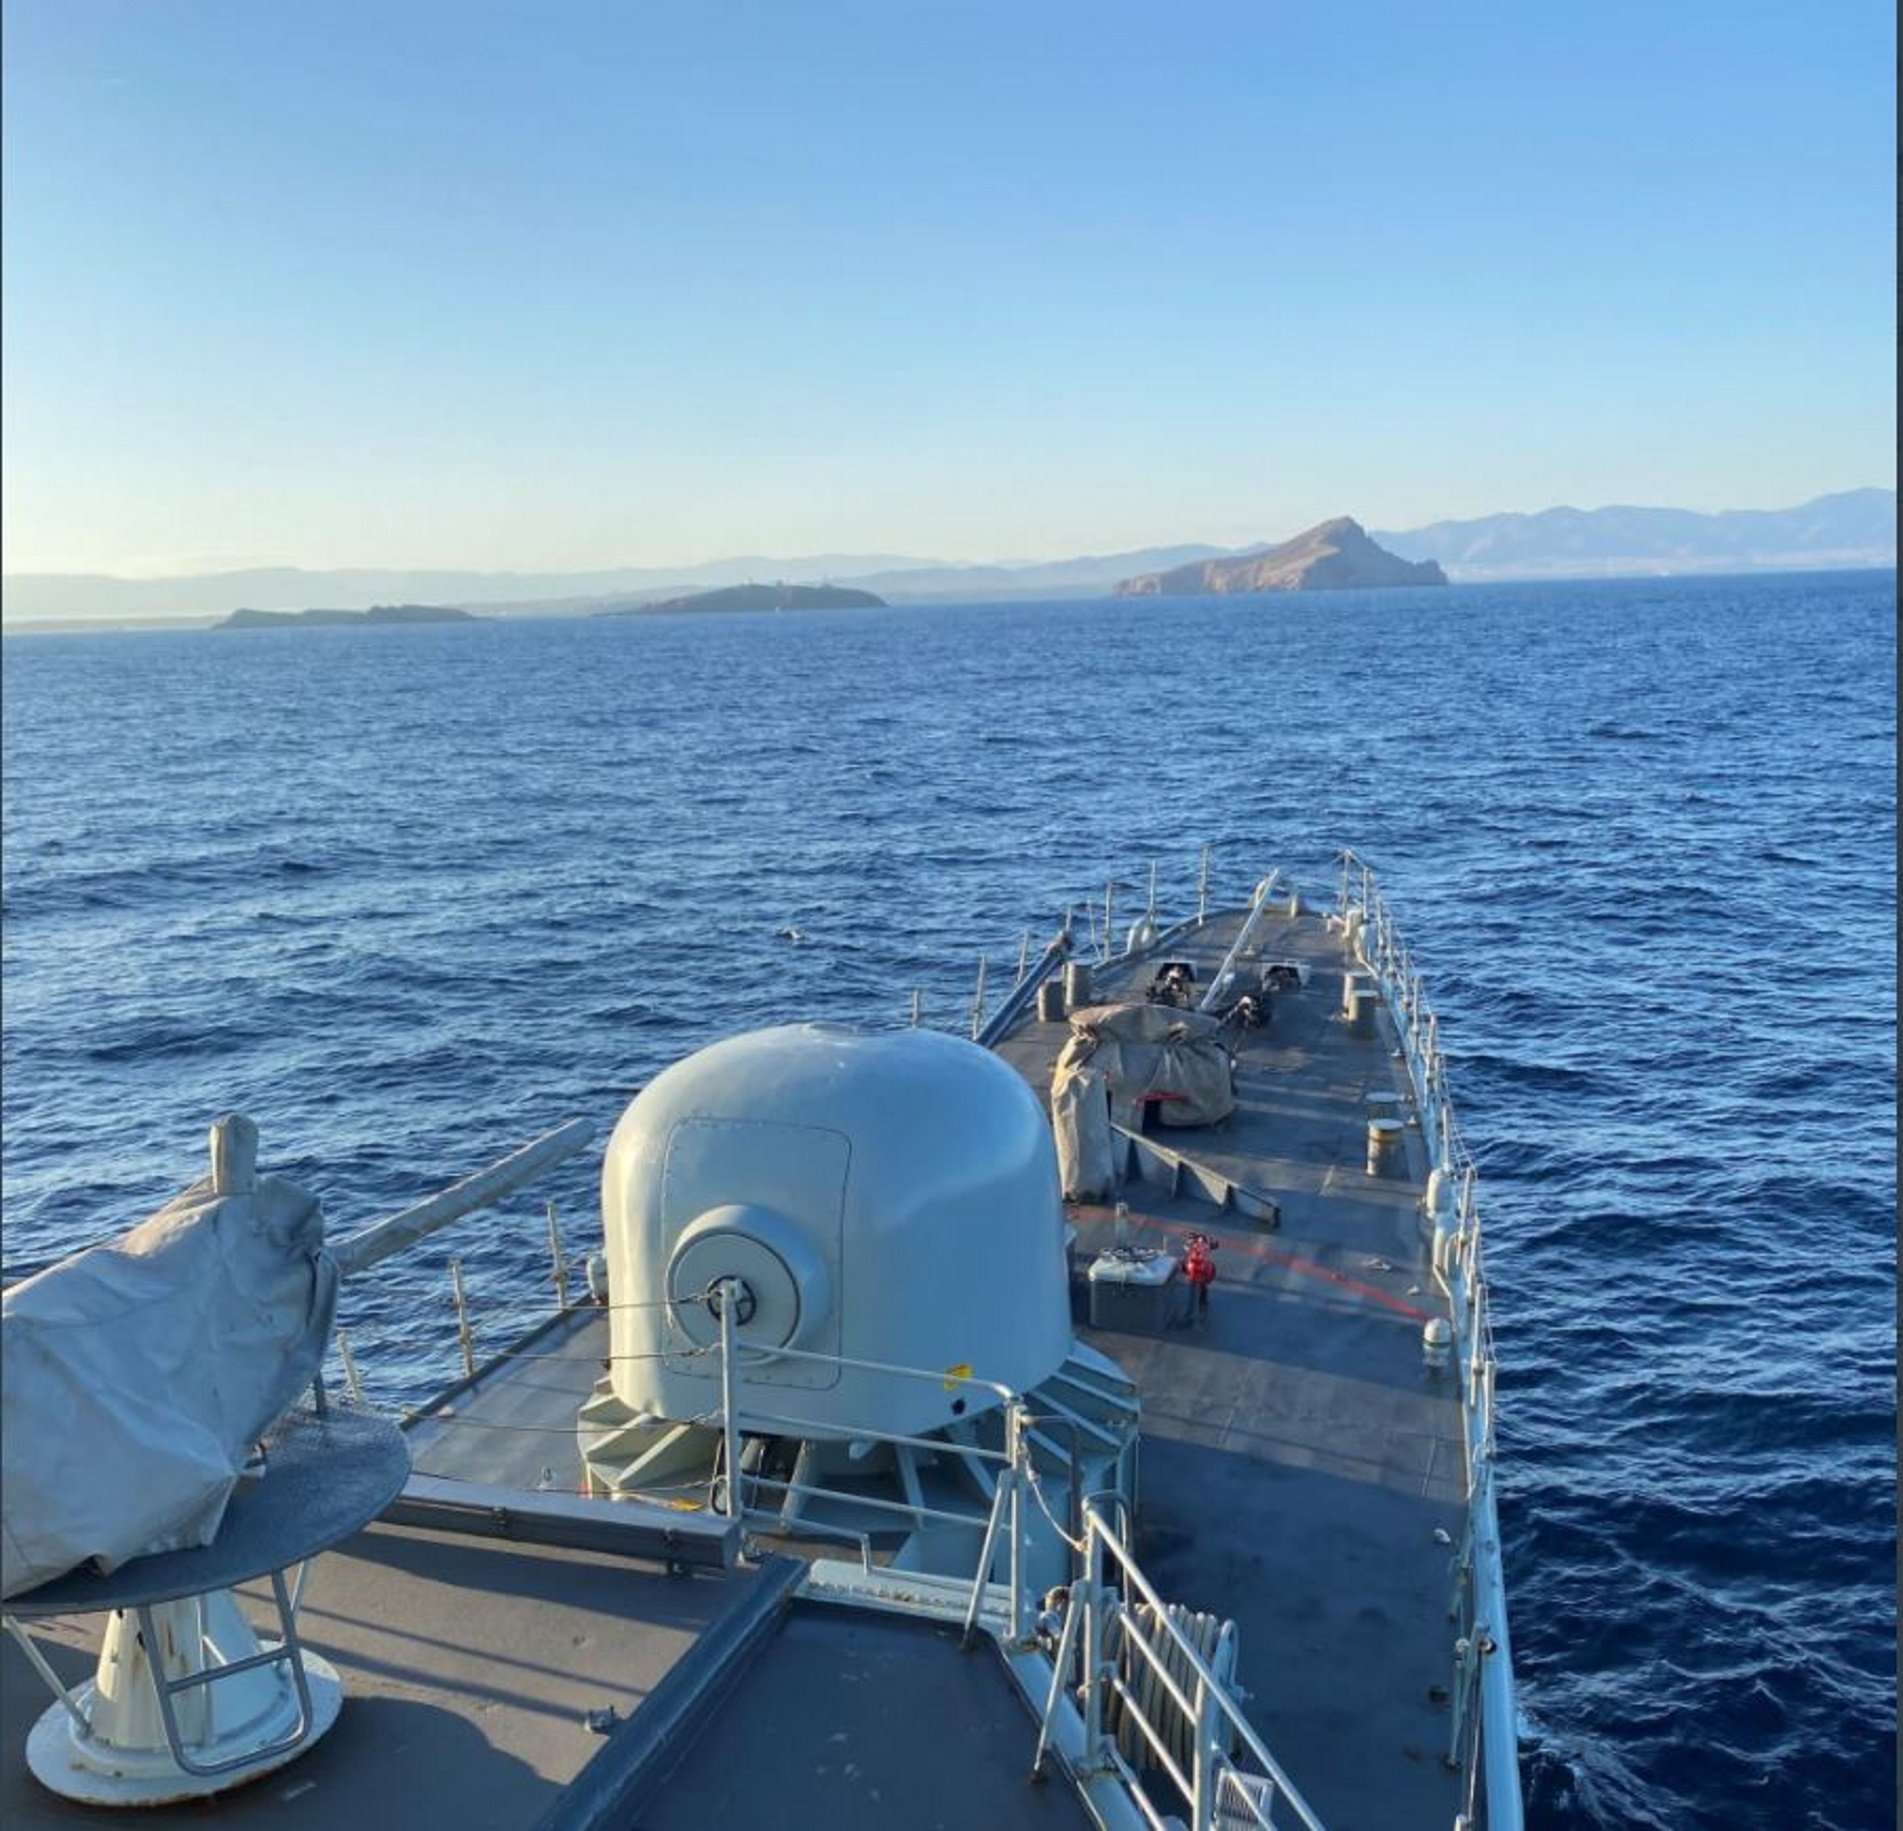 España envía un barco de guerra a las Chafarinas: "¿Perejil II?", dice Iñarritu